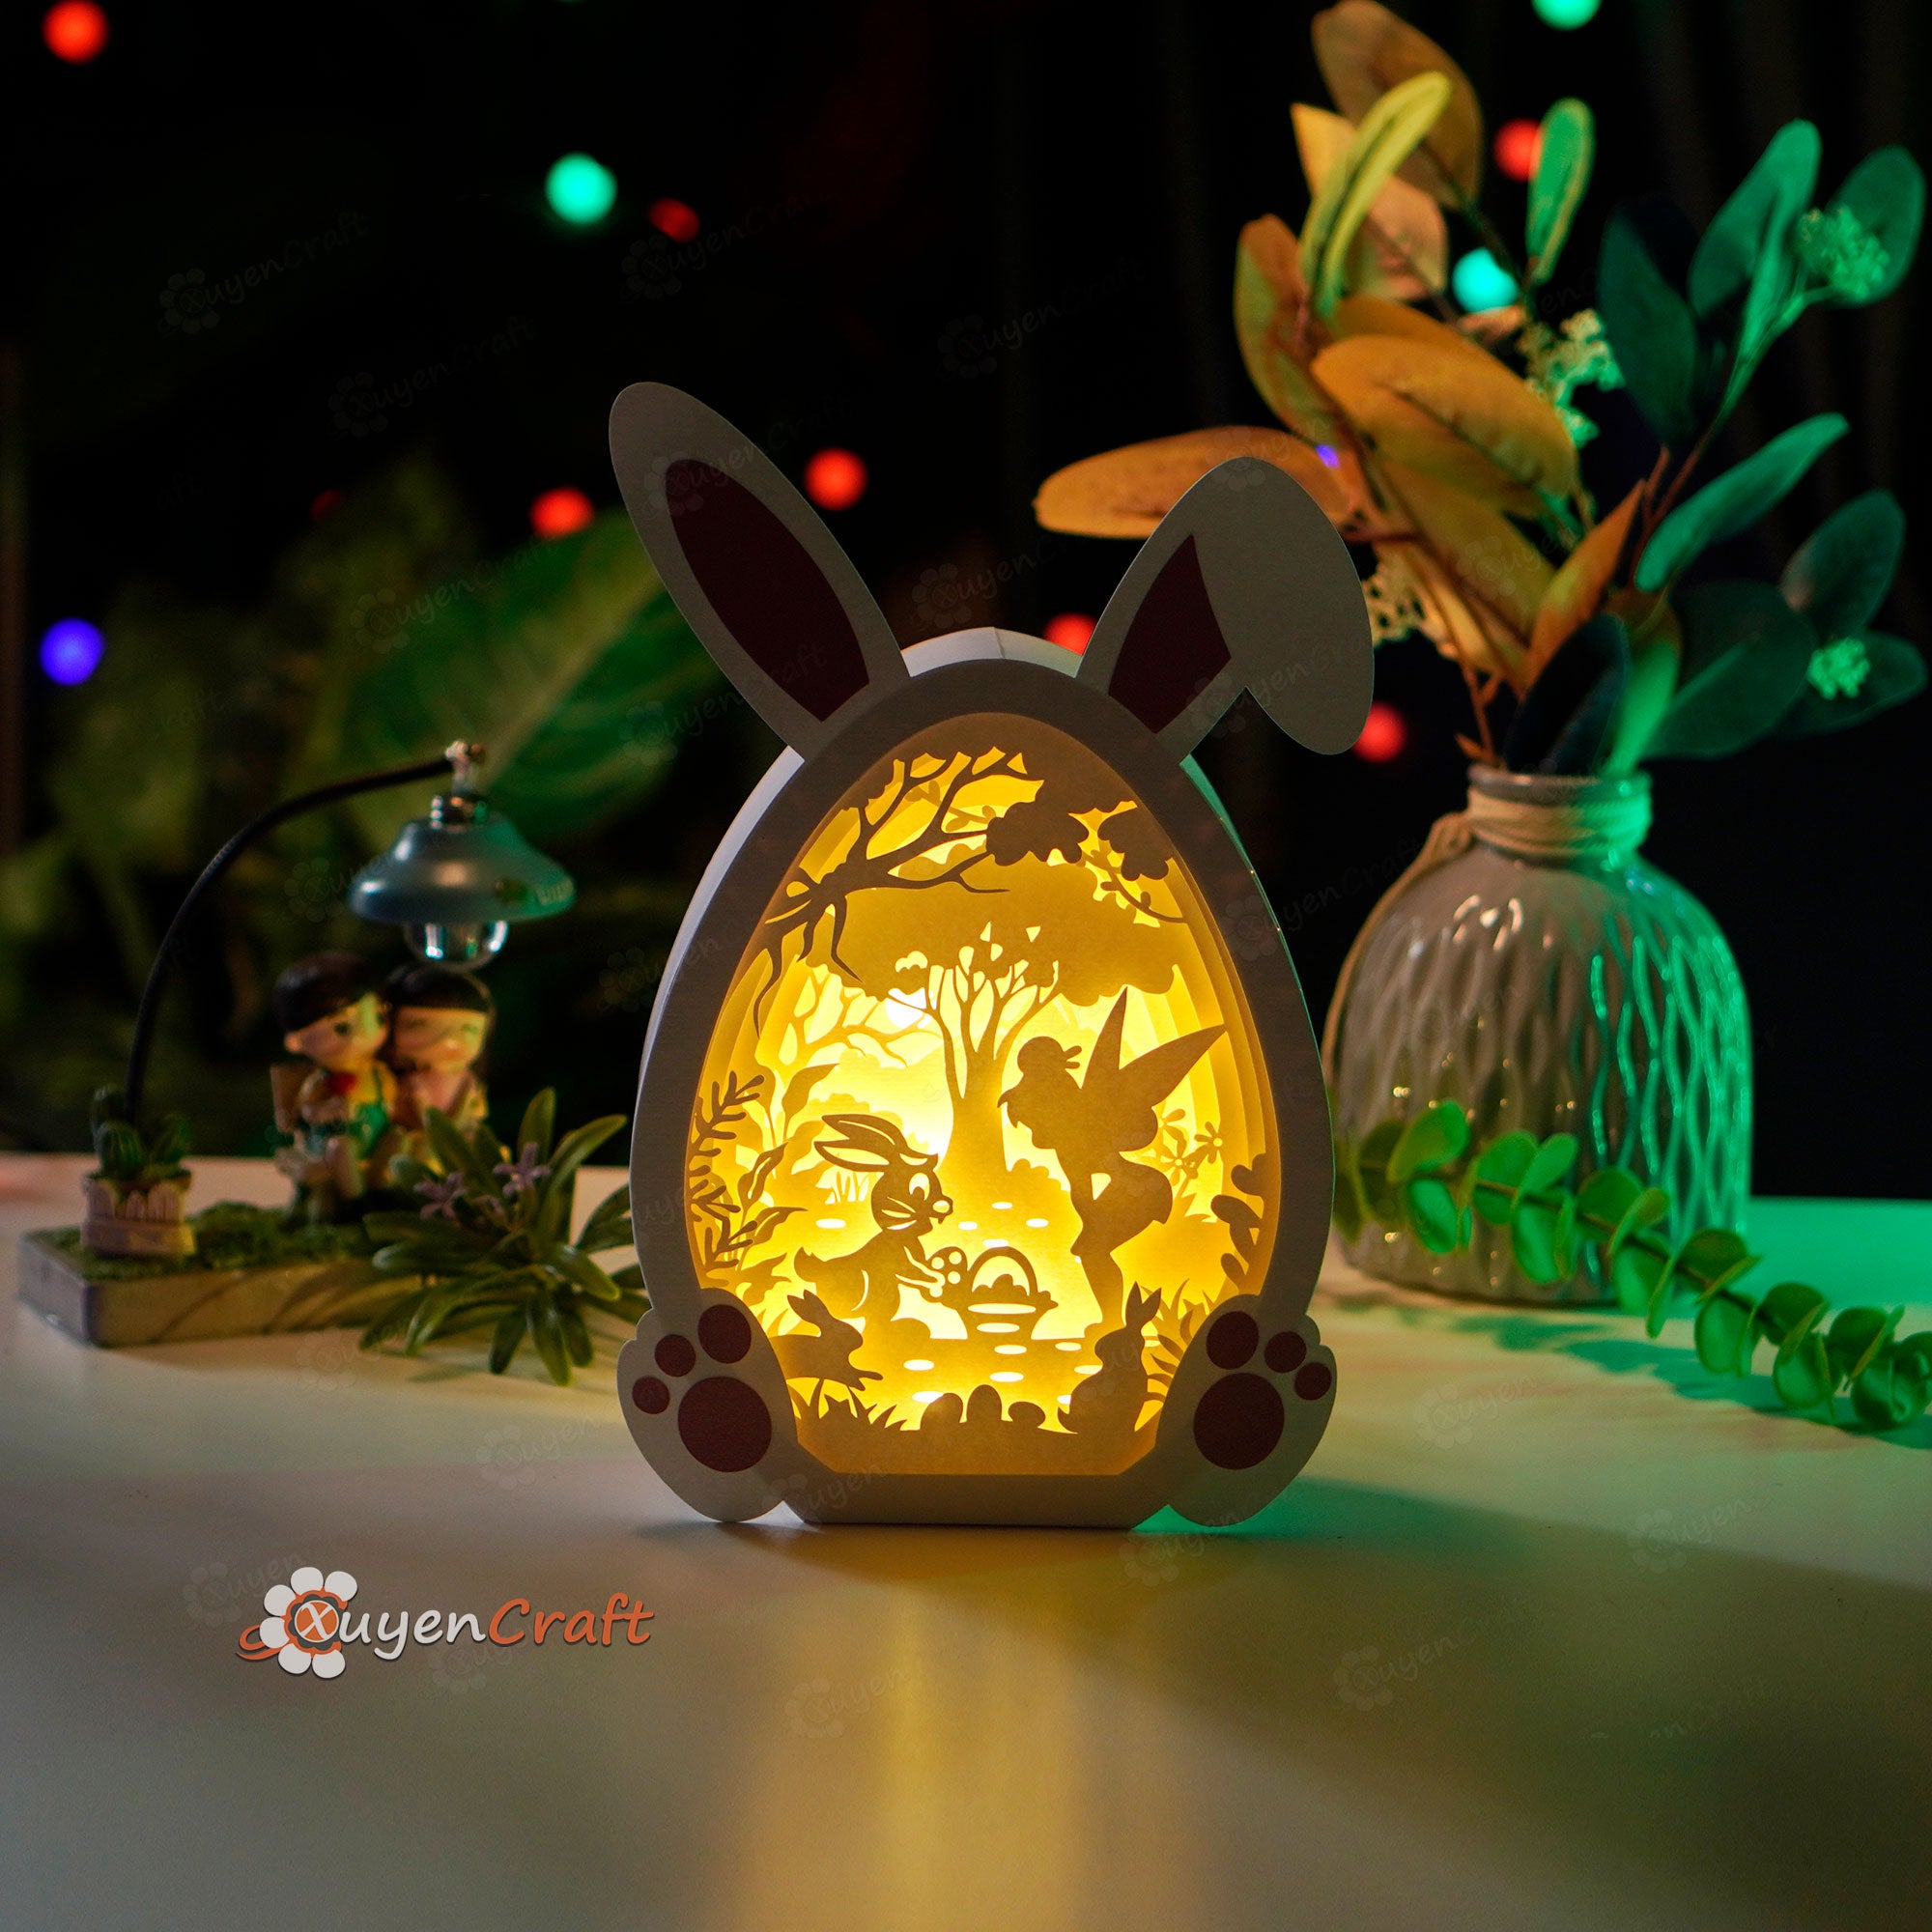 Bunny Easter Egg Pop Up SVG Template 3D Papercut Light Box